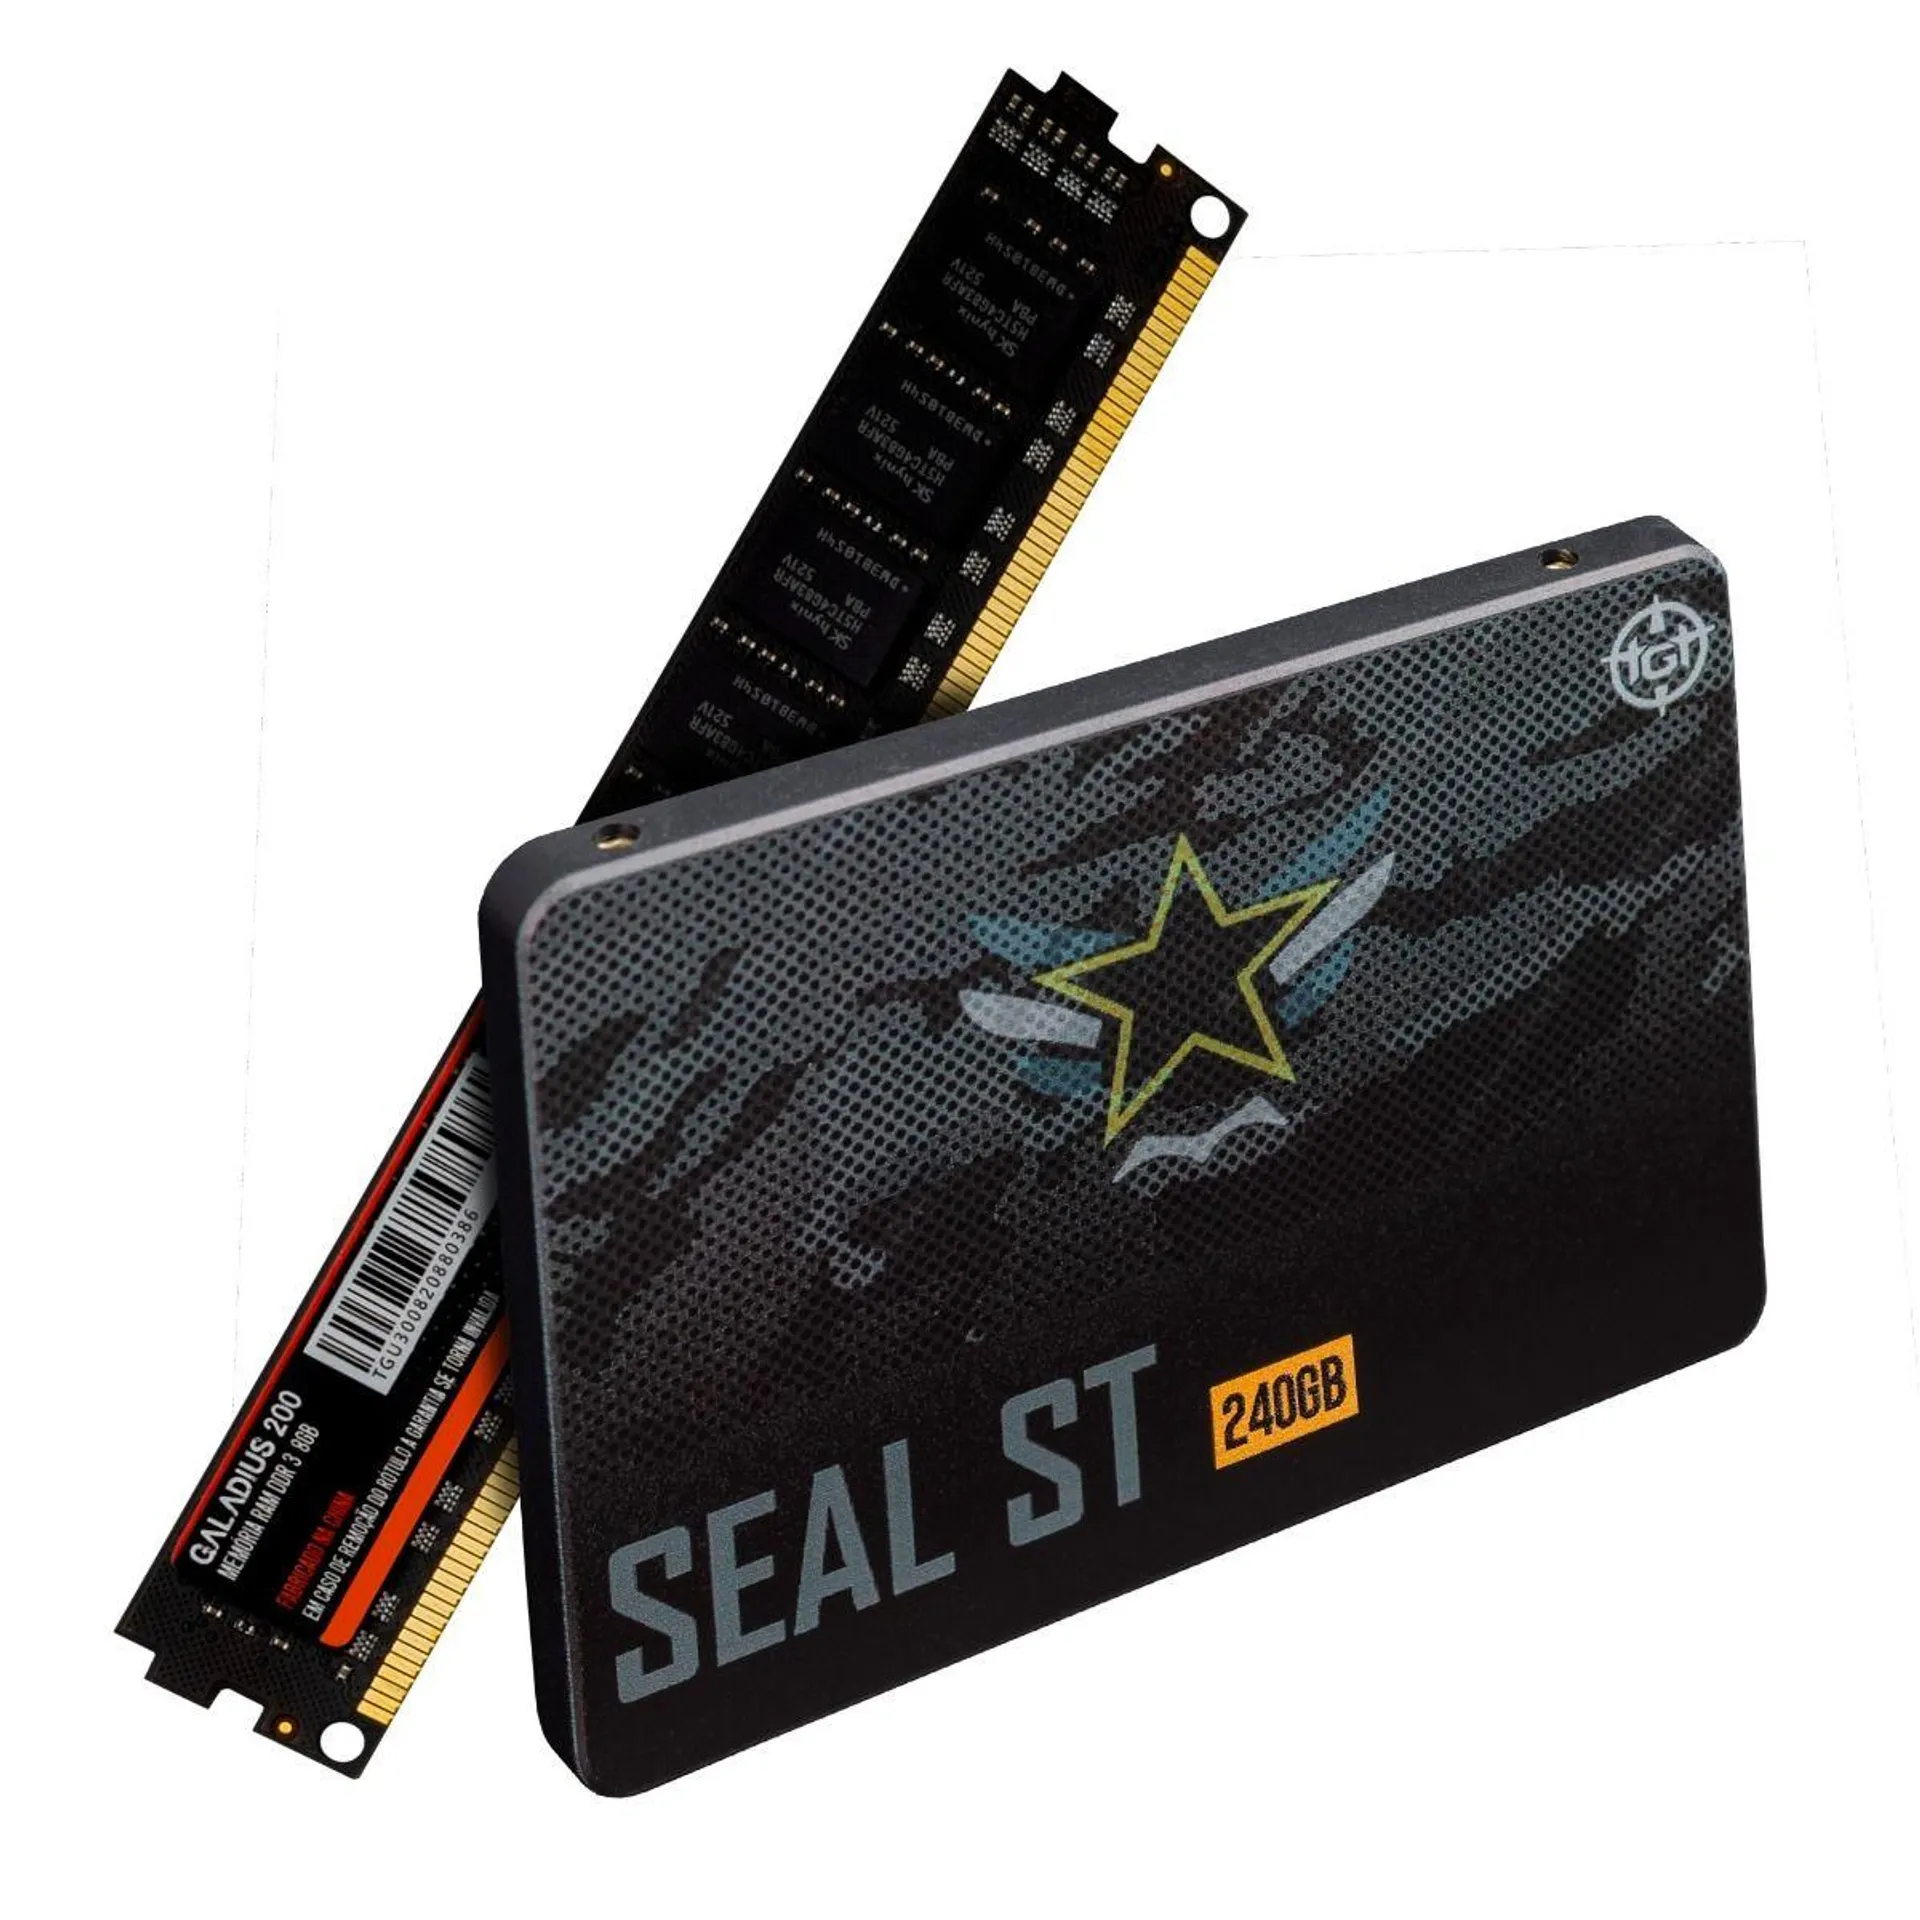 Kit SSD TGT Seal ST, 240GB, Sata III 6GB/s, Leitura 500 MB/s, Gravacao 450 MB/s, Memoria TGT Galadius 200, 8GB (1x8GB), DDR3, 1600MHz, C11